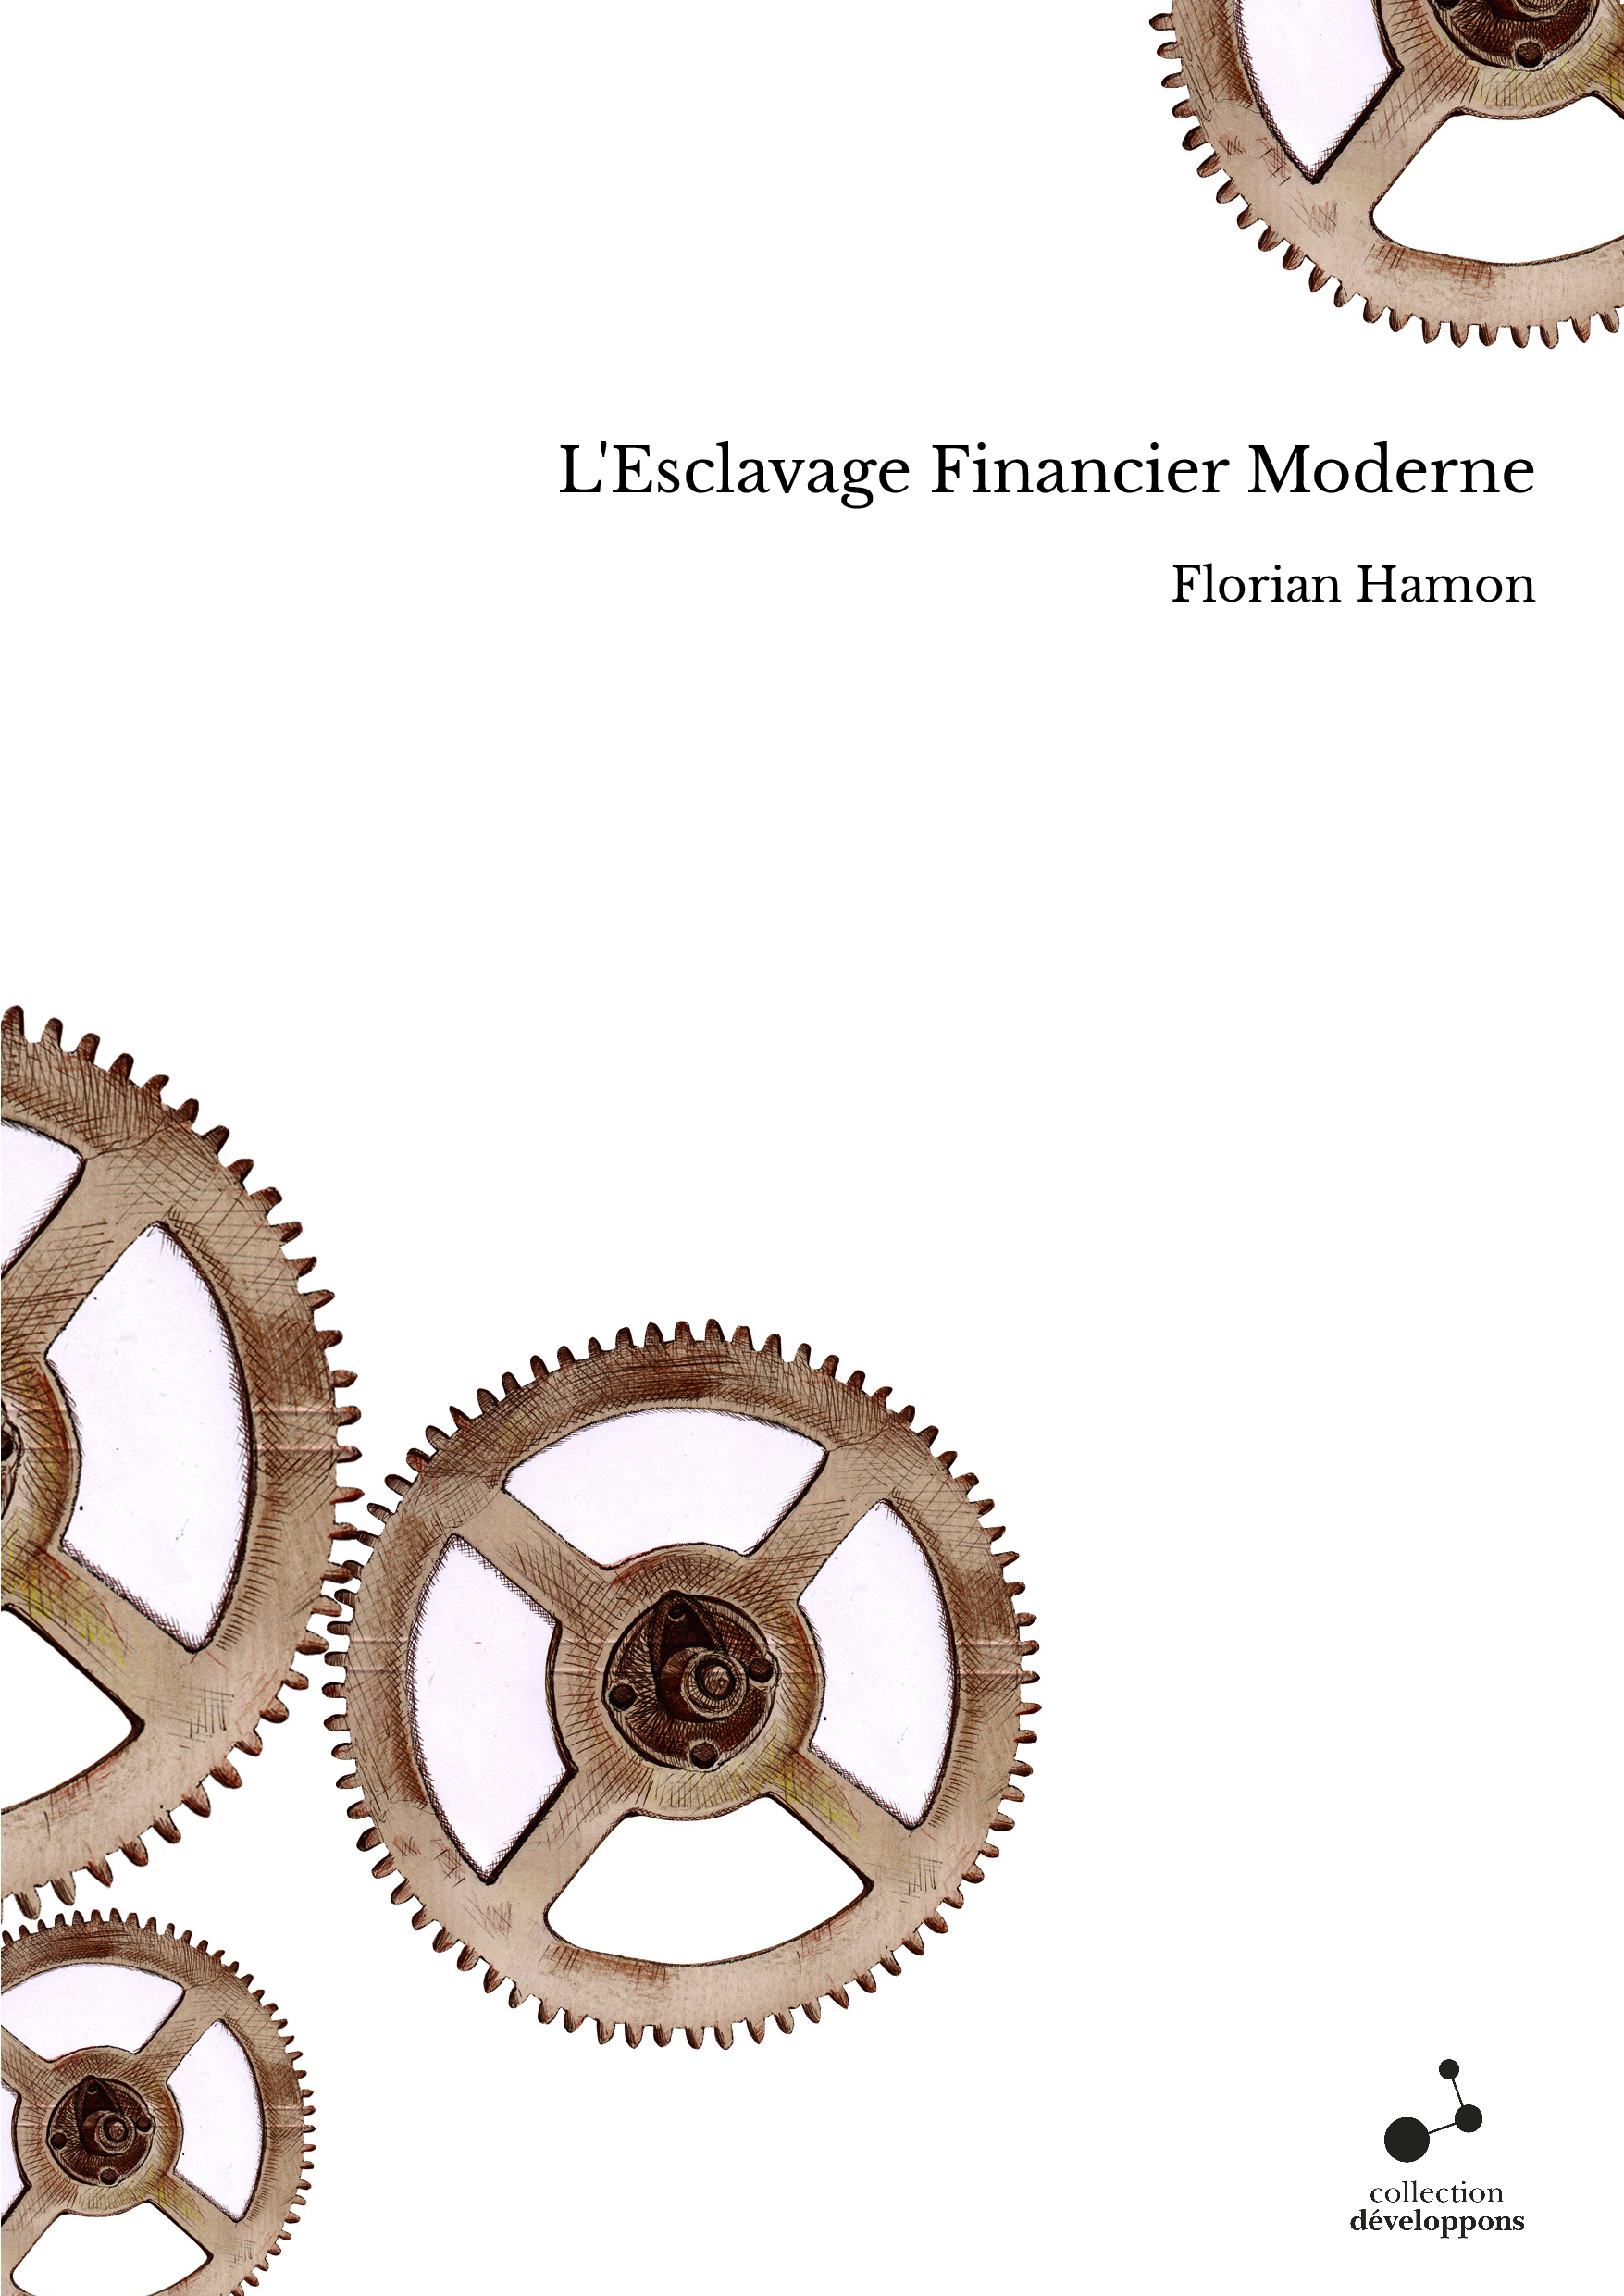 L'Esclavage Financier Moderne